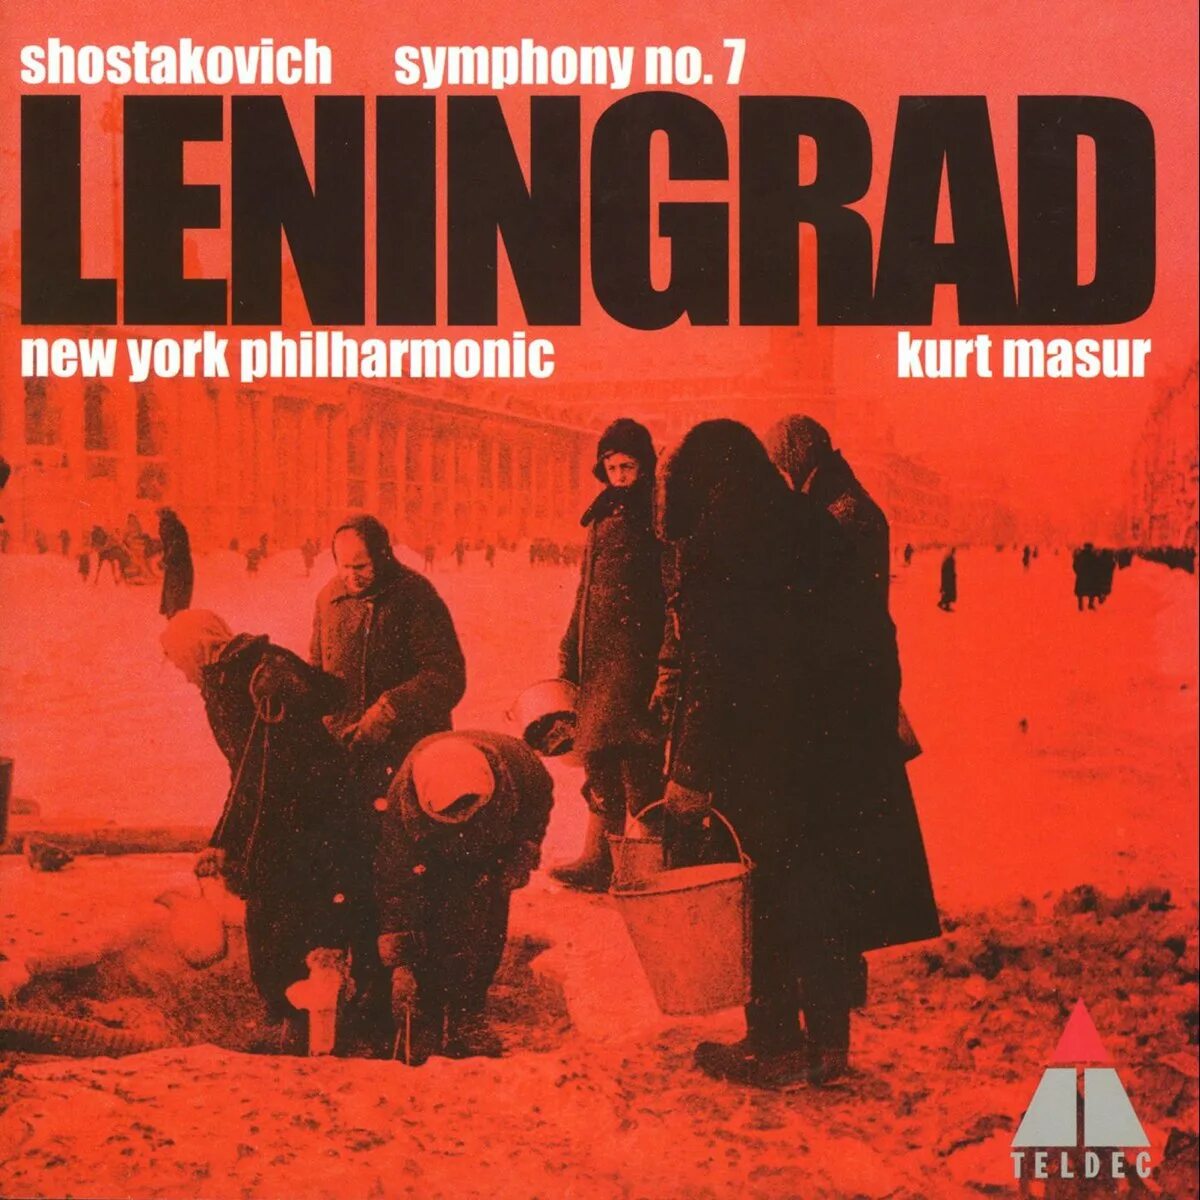 Shostakovich: Symphony no. 7 "Leningrad". Major, op. 60, "Leningrad образ. Шостакович ленинград слушать